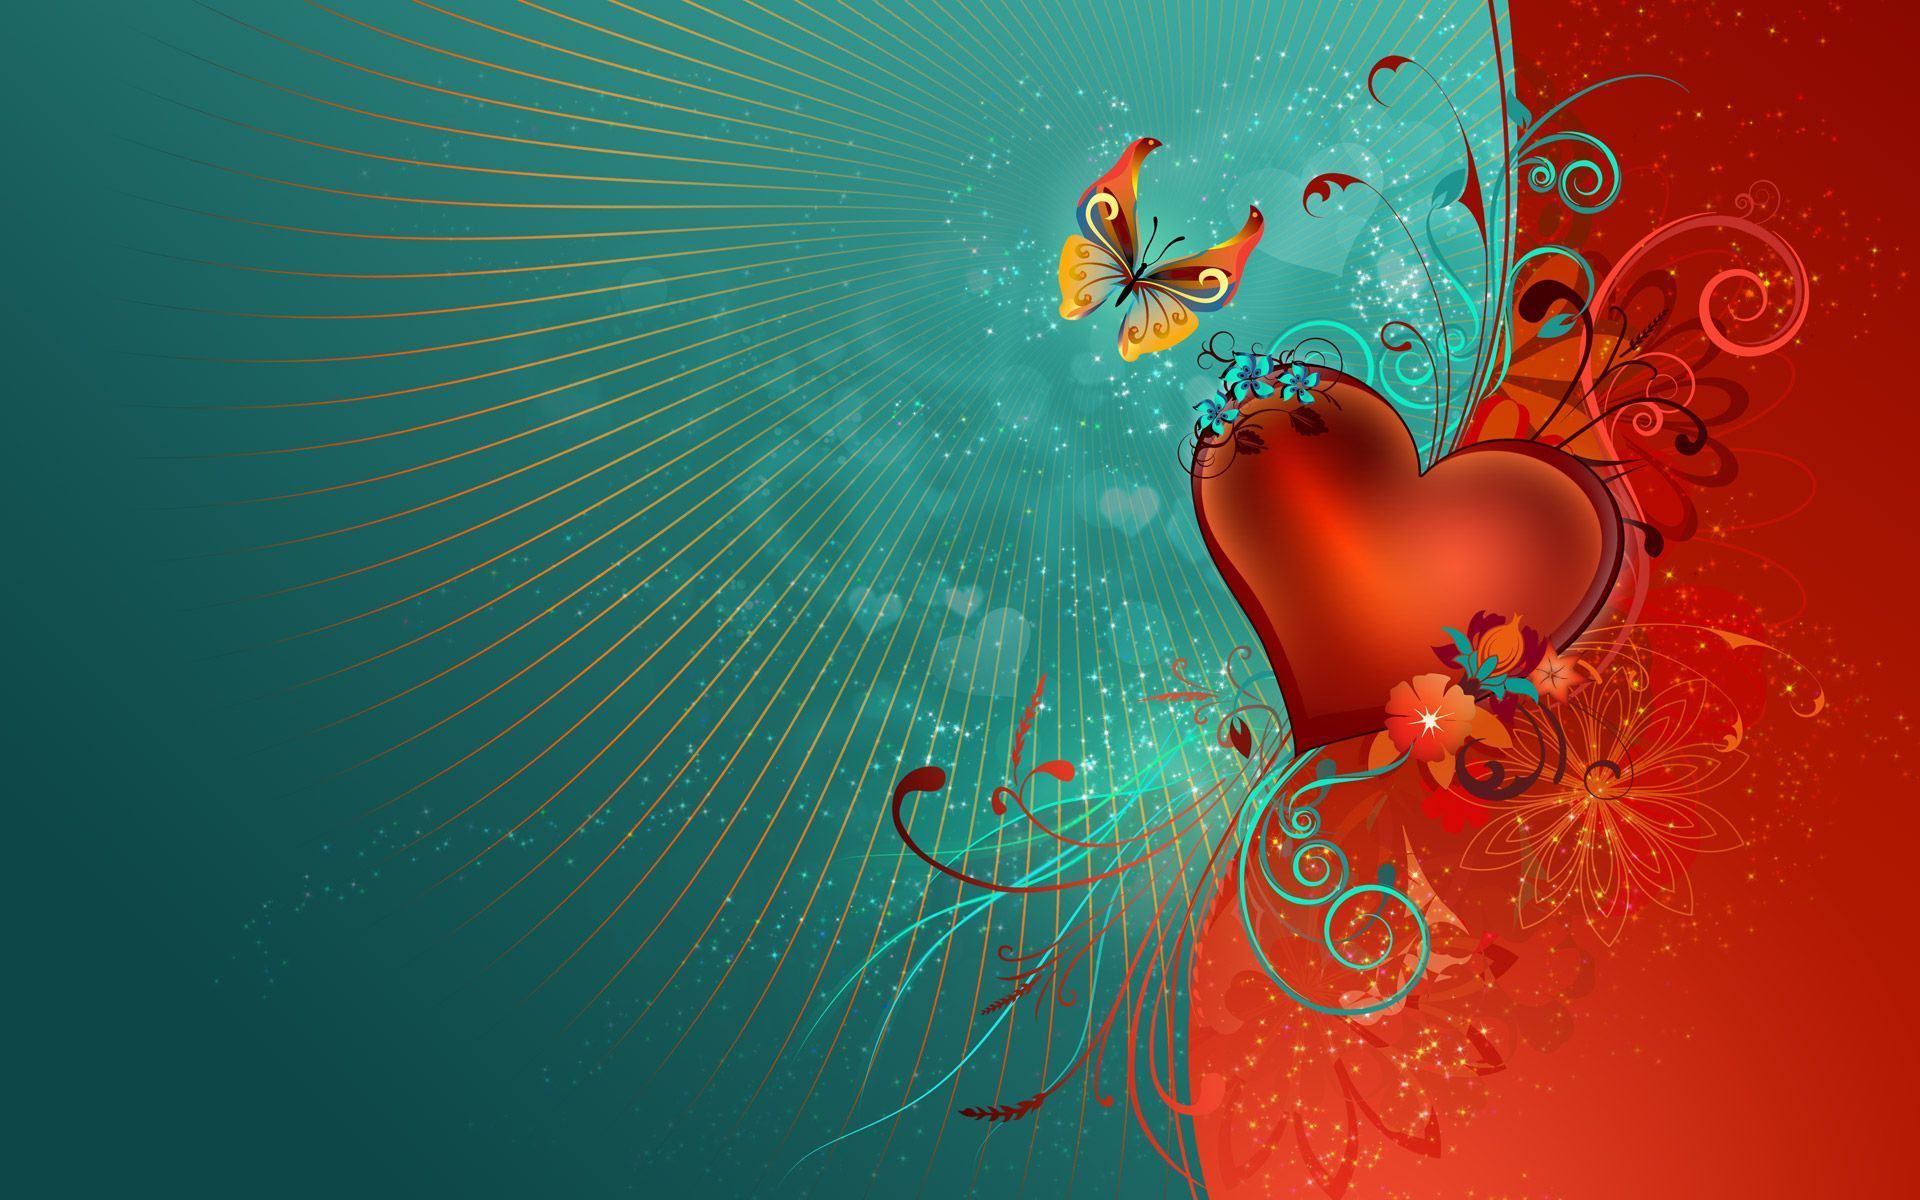 Valentines Desktop Wallpaper Images  Free Download on Freepik